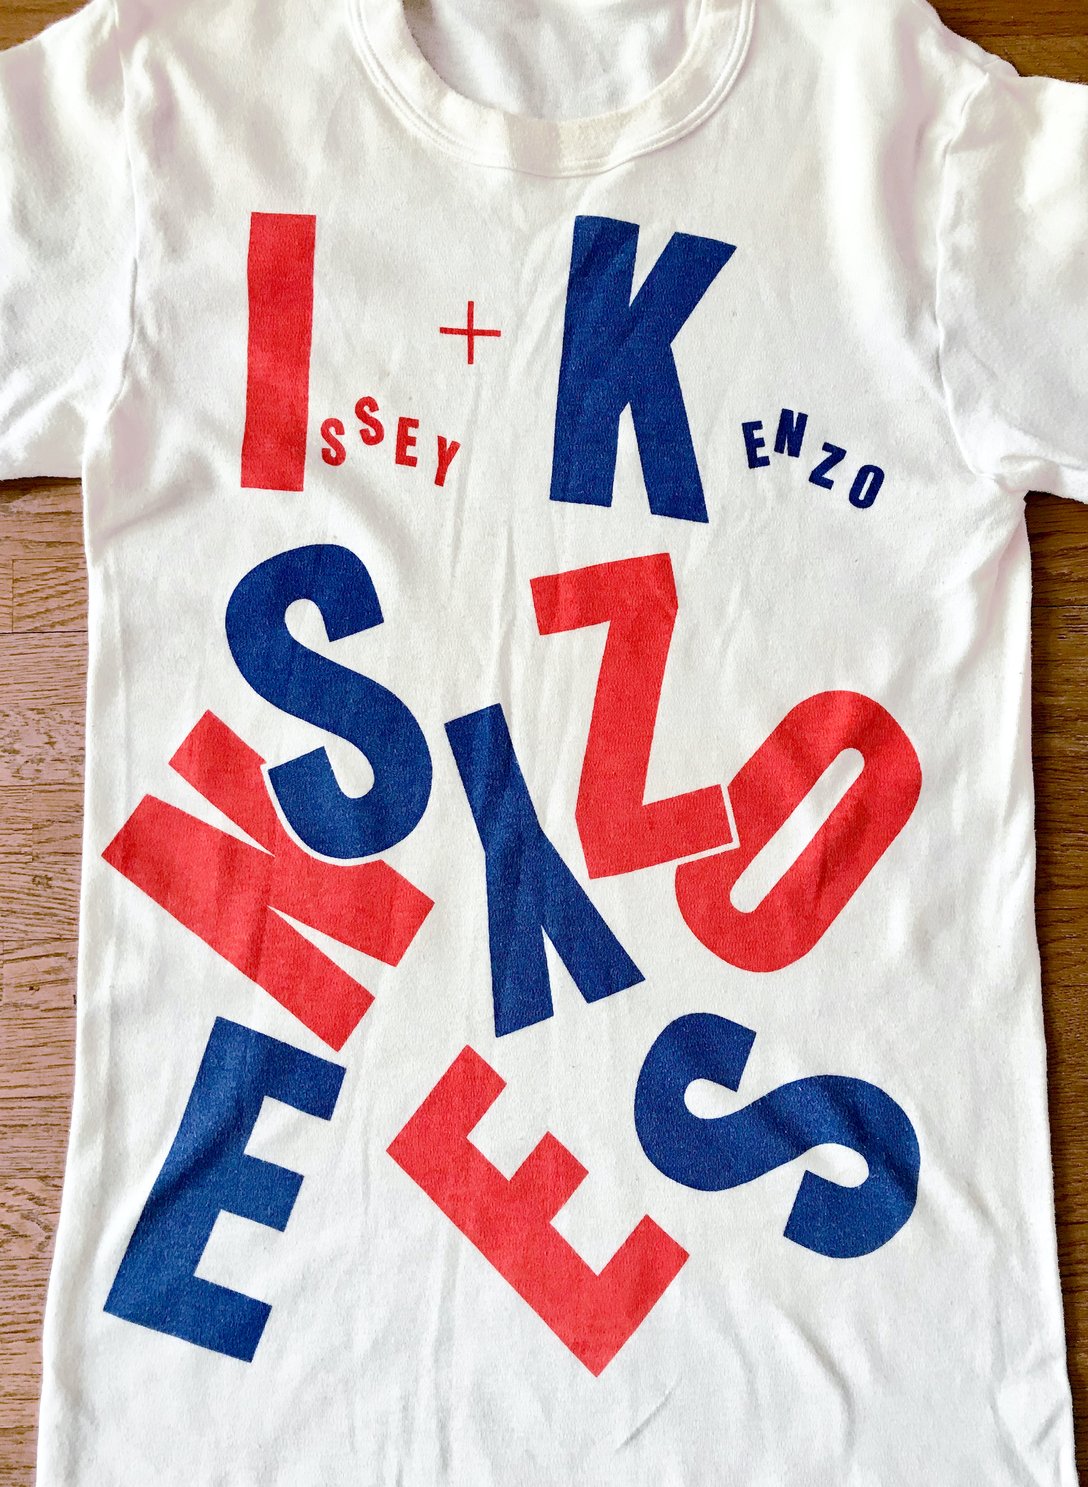 「ISSEY MIYAKE + KENZO TAKADA」のスタッフTシャツ（筆者私物）